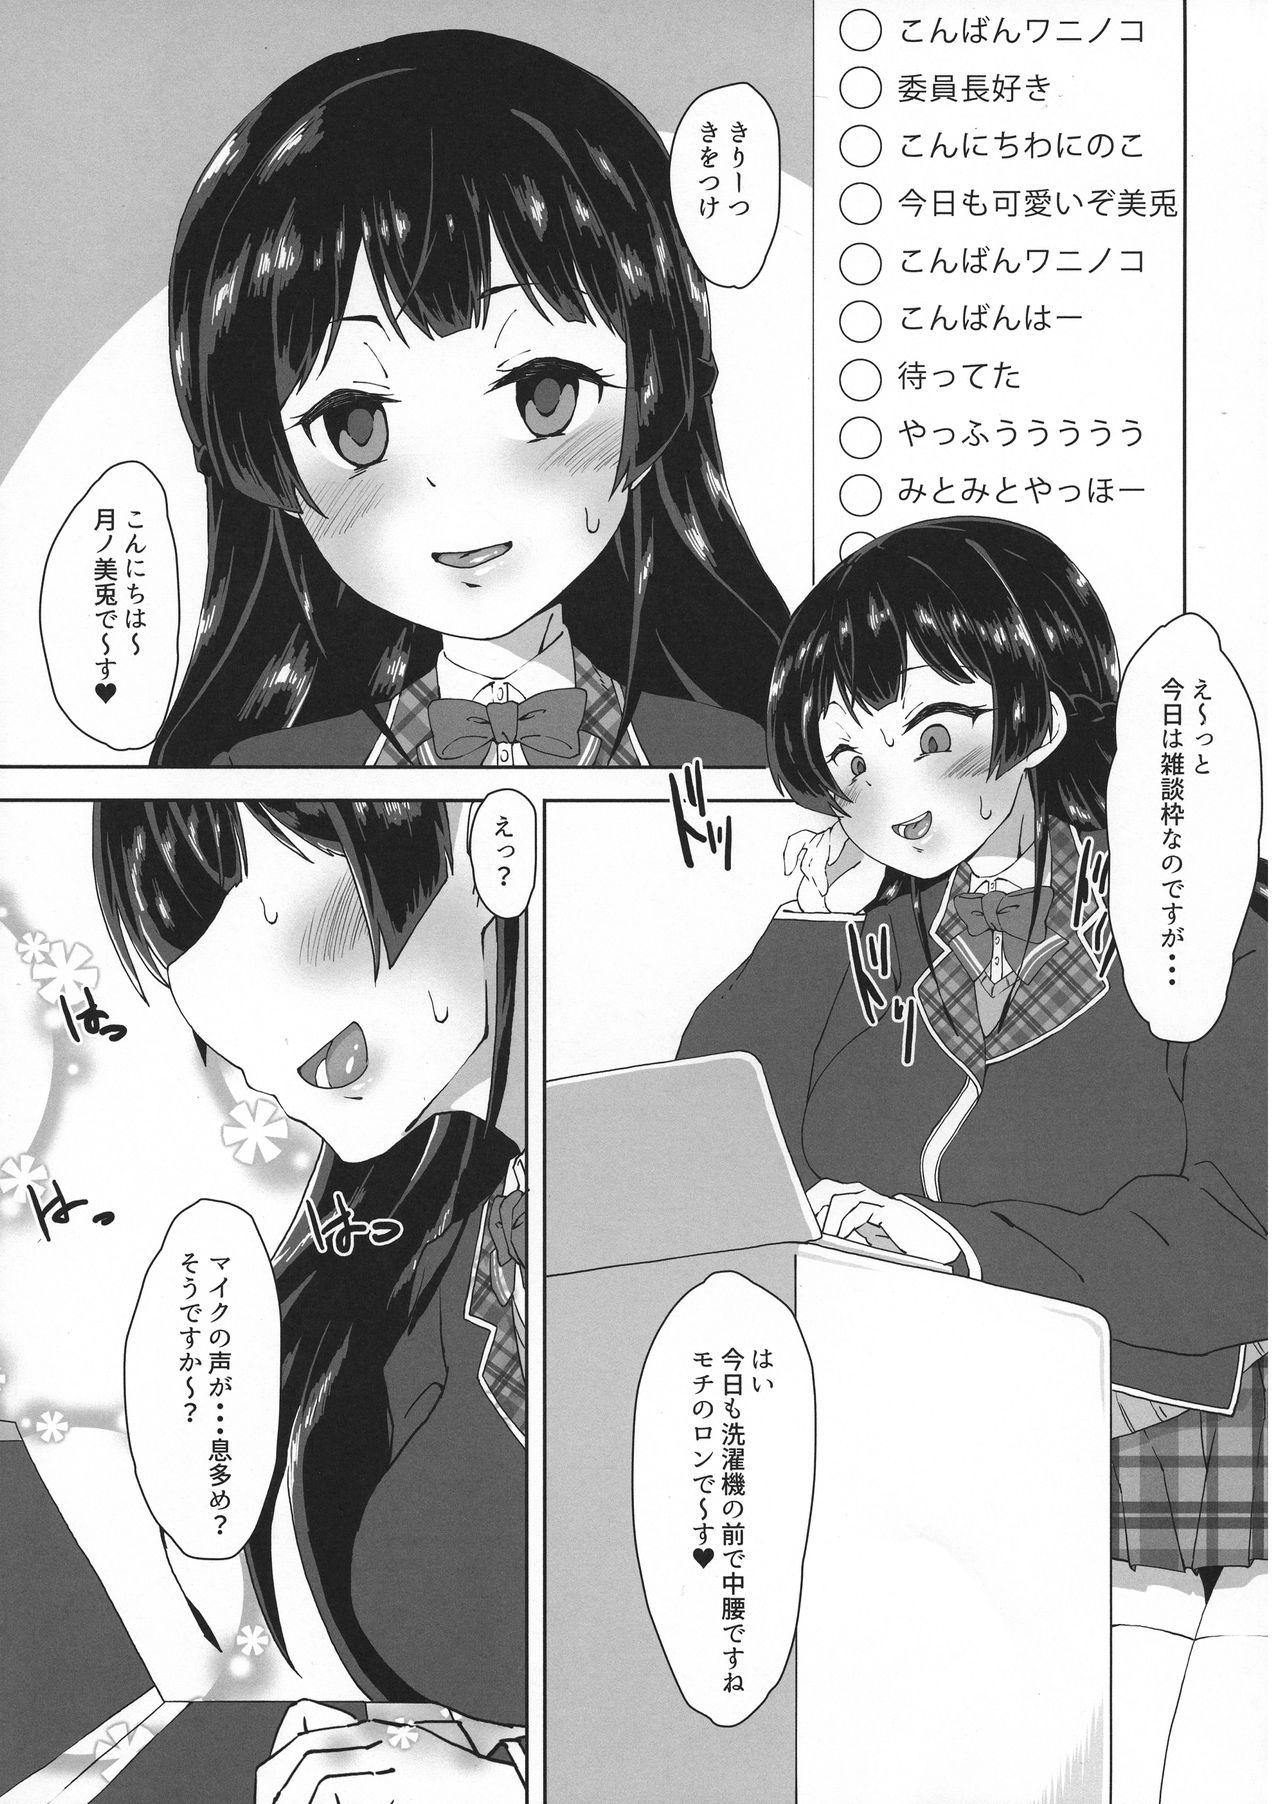 Hotfuck Watakushide Matomenakya Shesafreak - Page 5